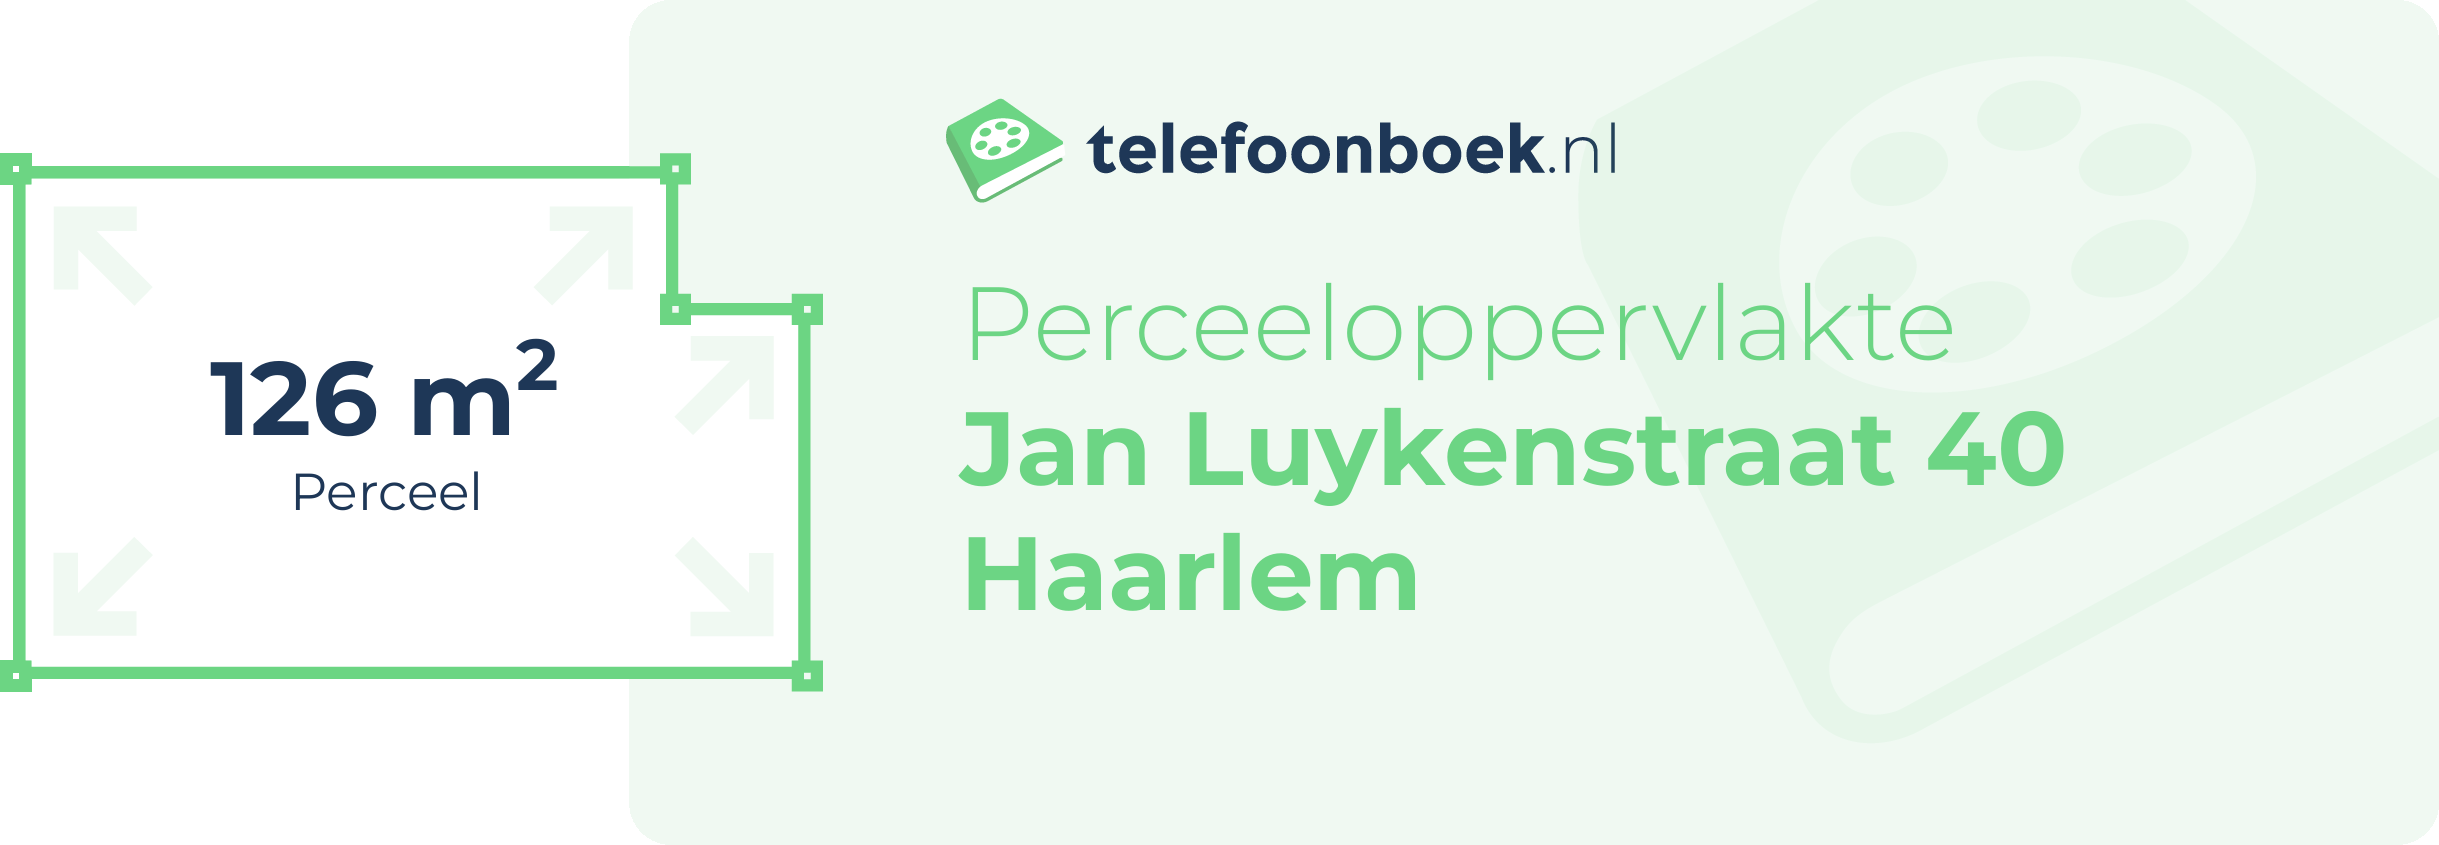 Perceeloppervlakte Jan Luykenstraat 40 Haarlem